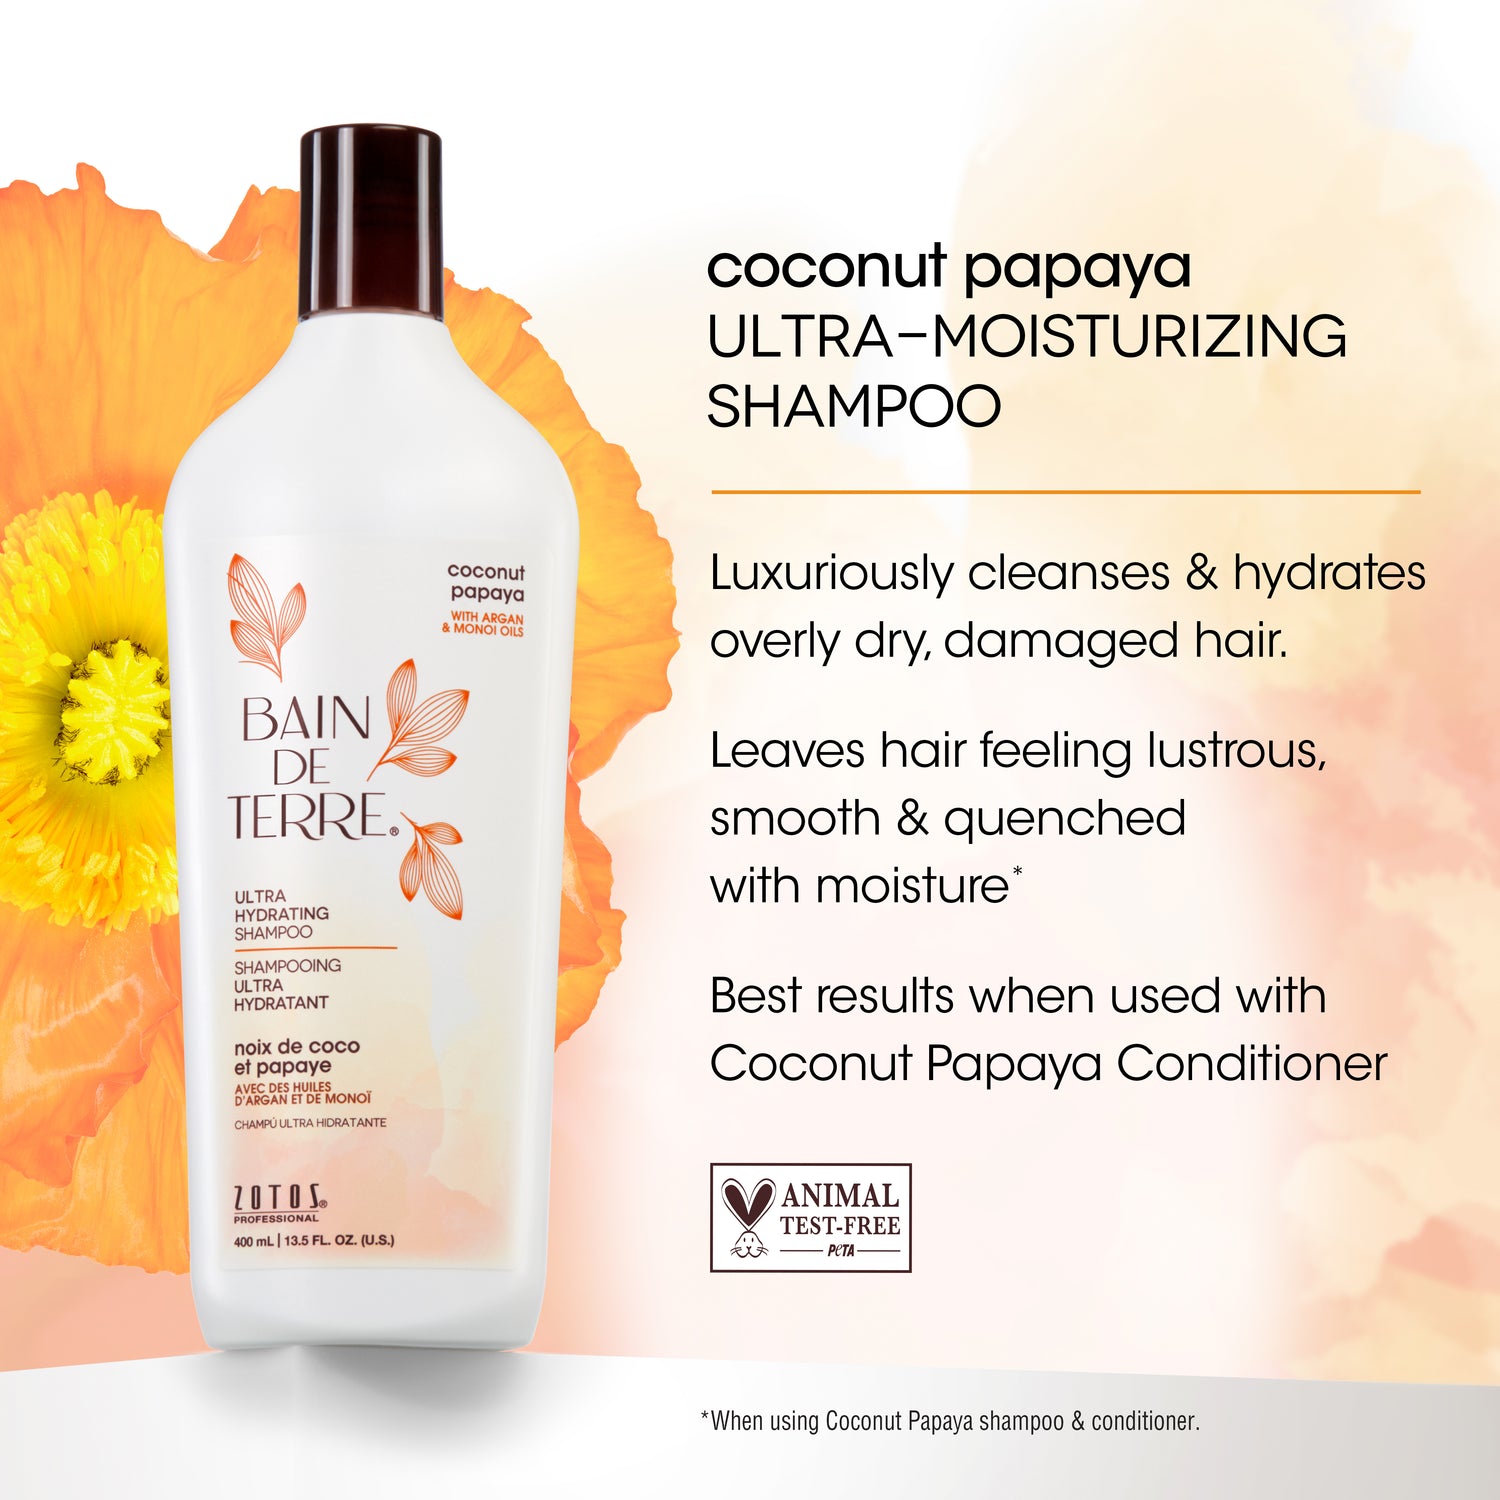 Bain de Terre® Ultra Hydrating Shampoo, Coconut Papaya